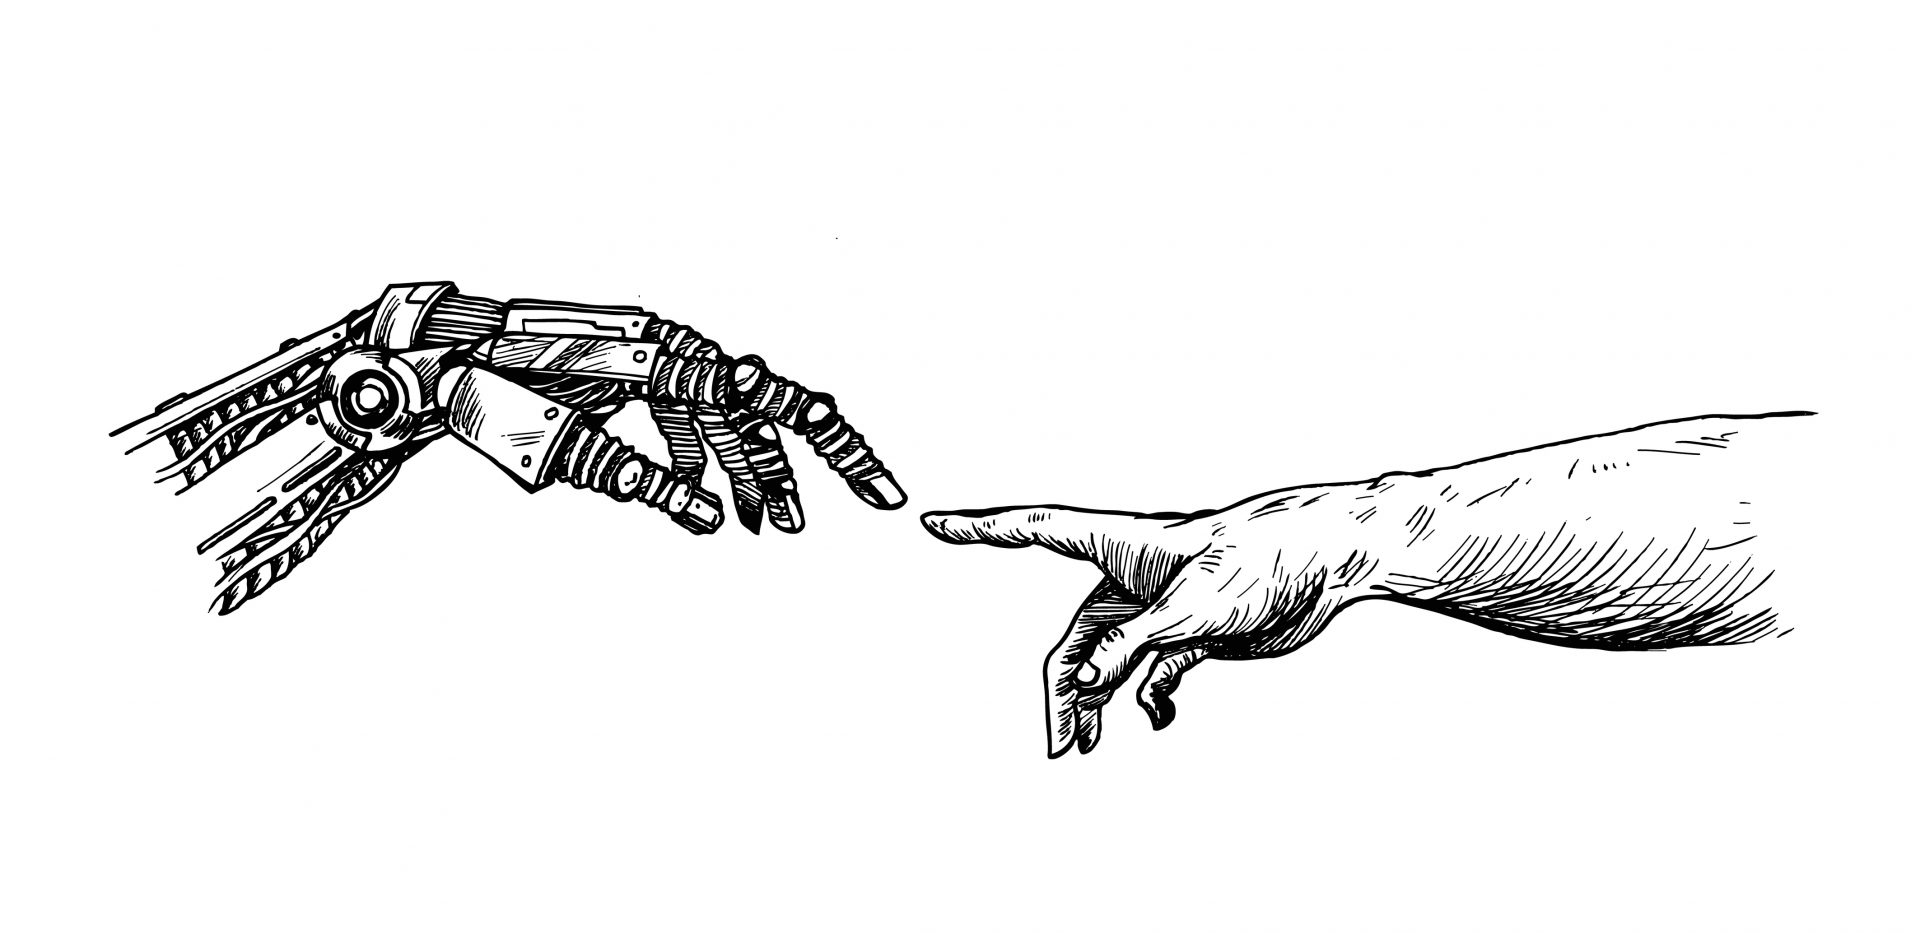 Рука робота и человека